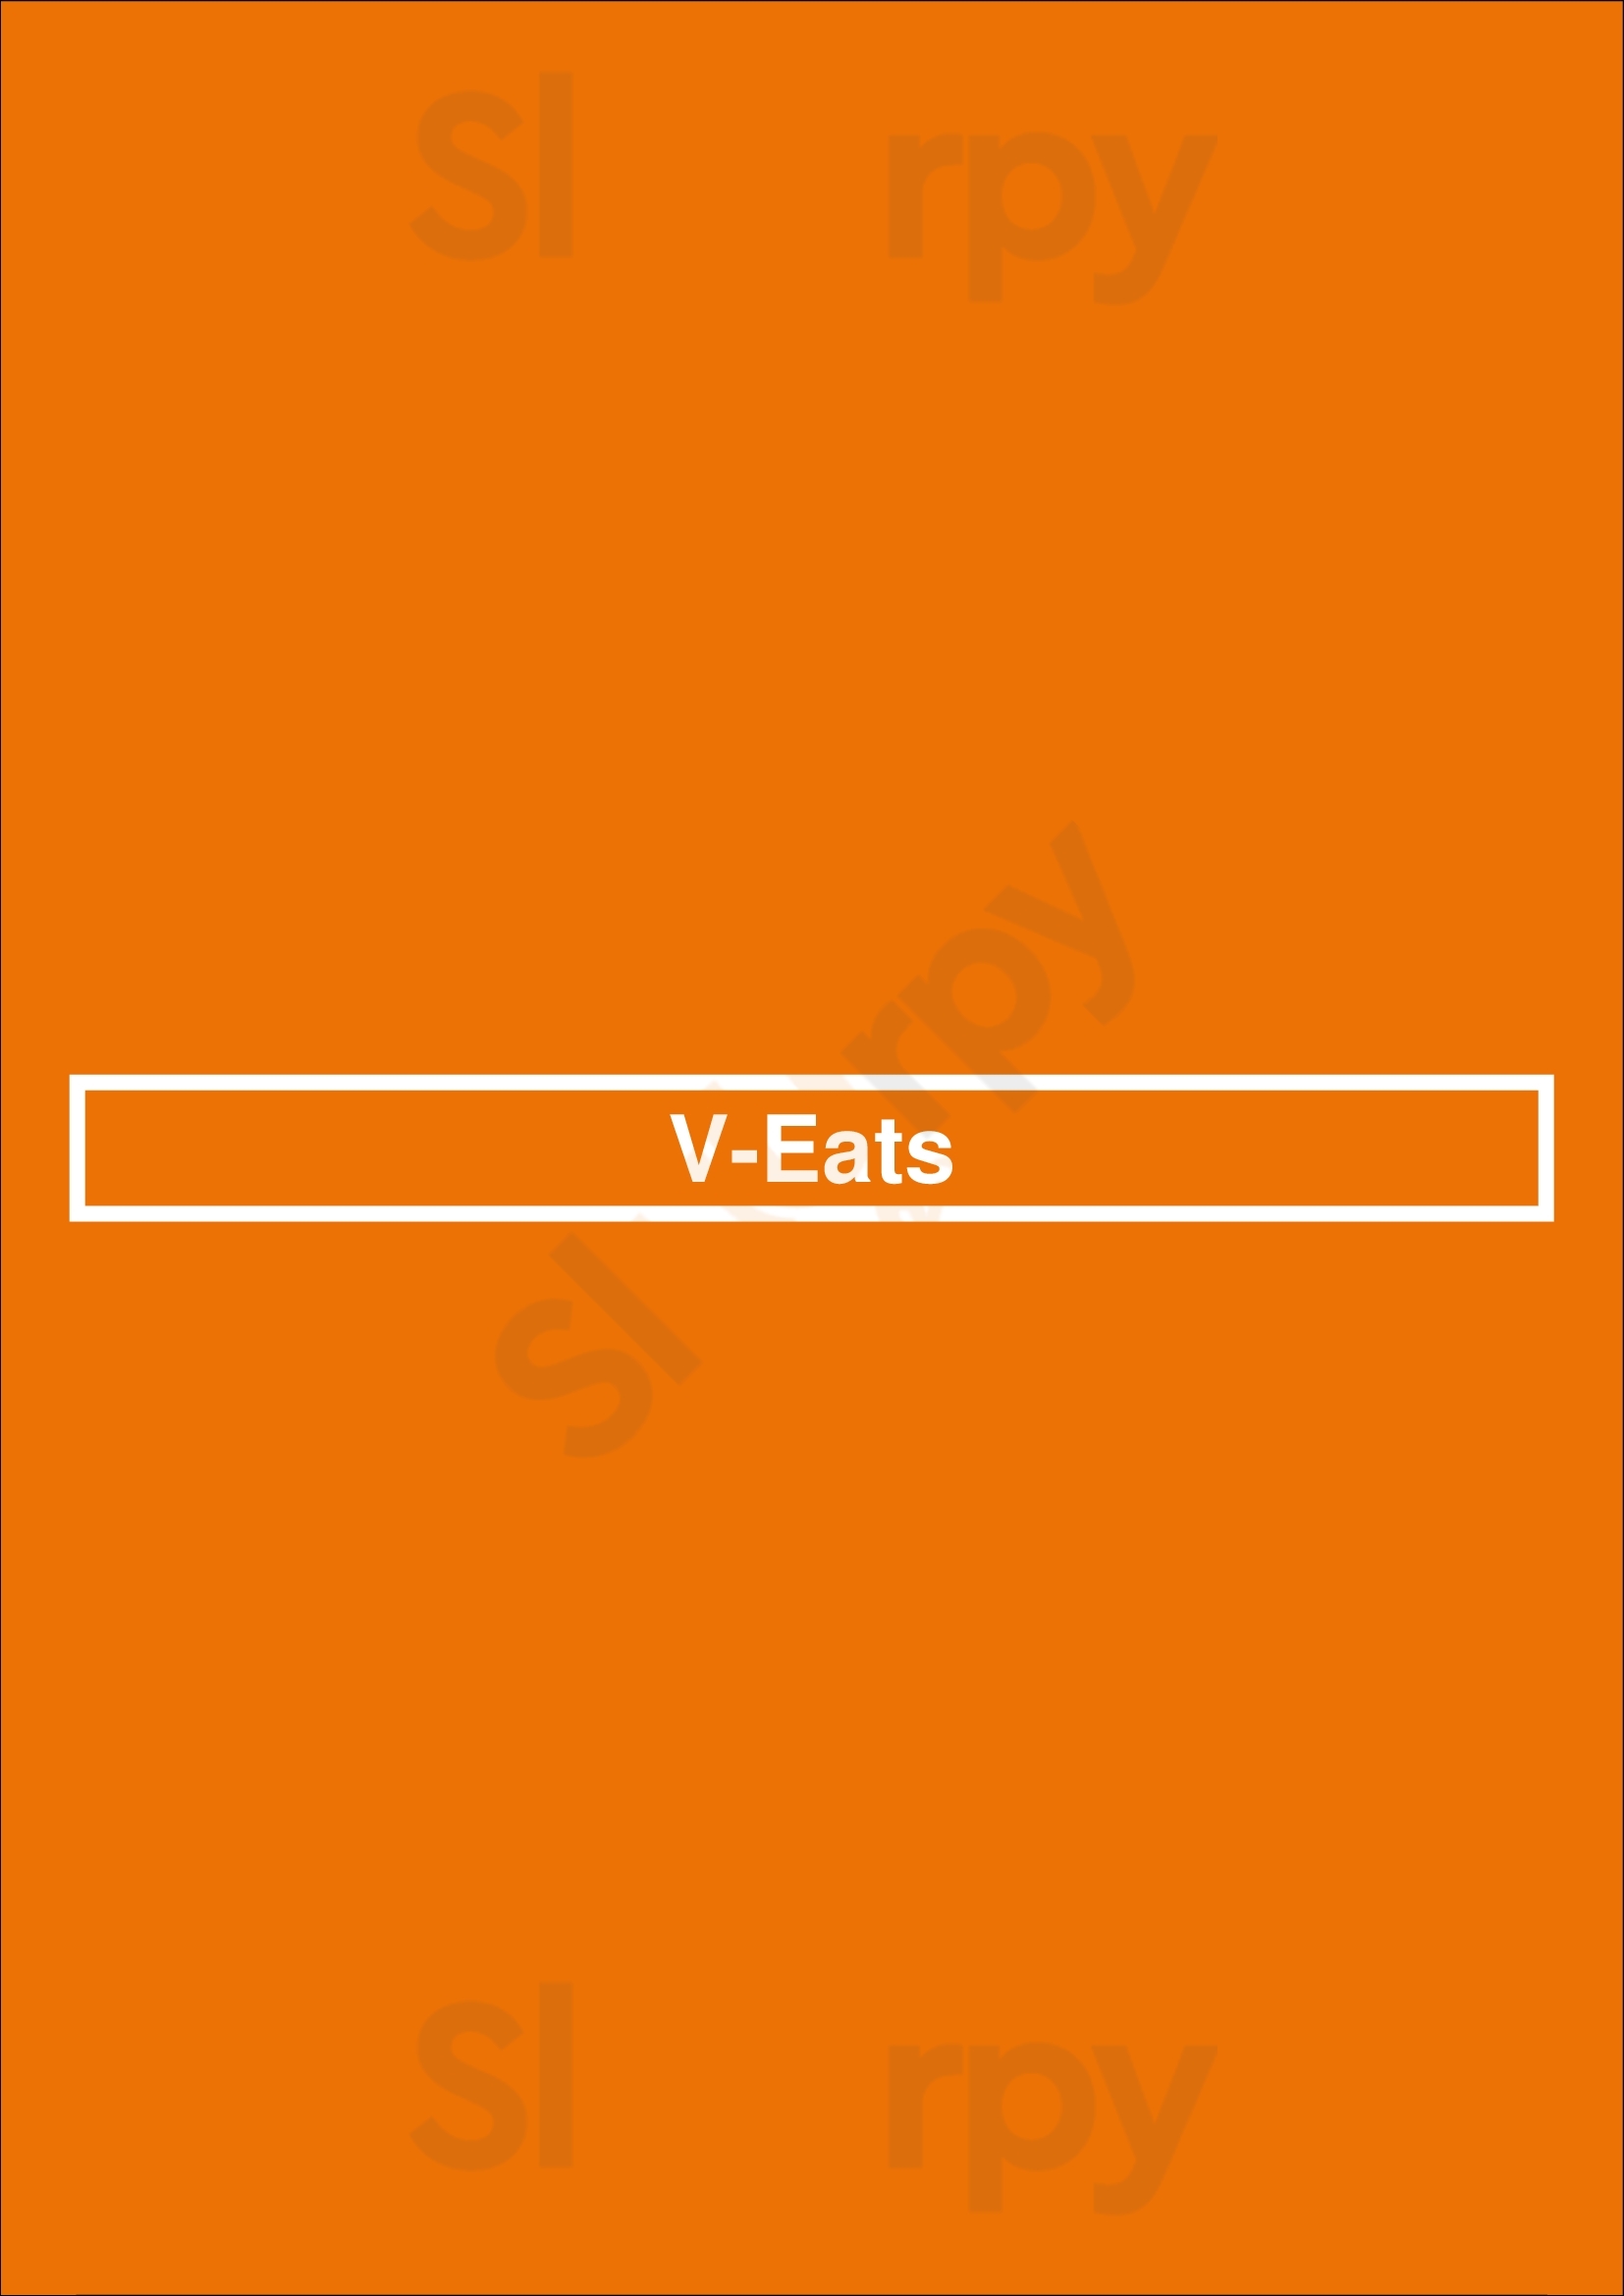 V-eats Dallas Menu - 1